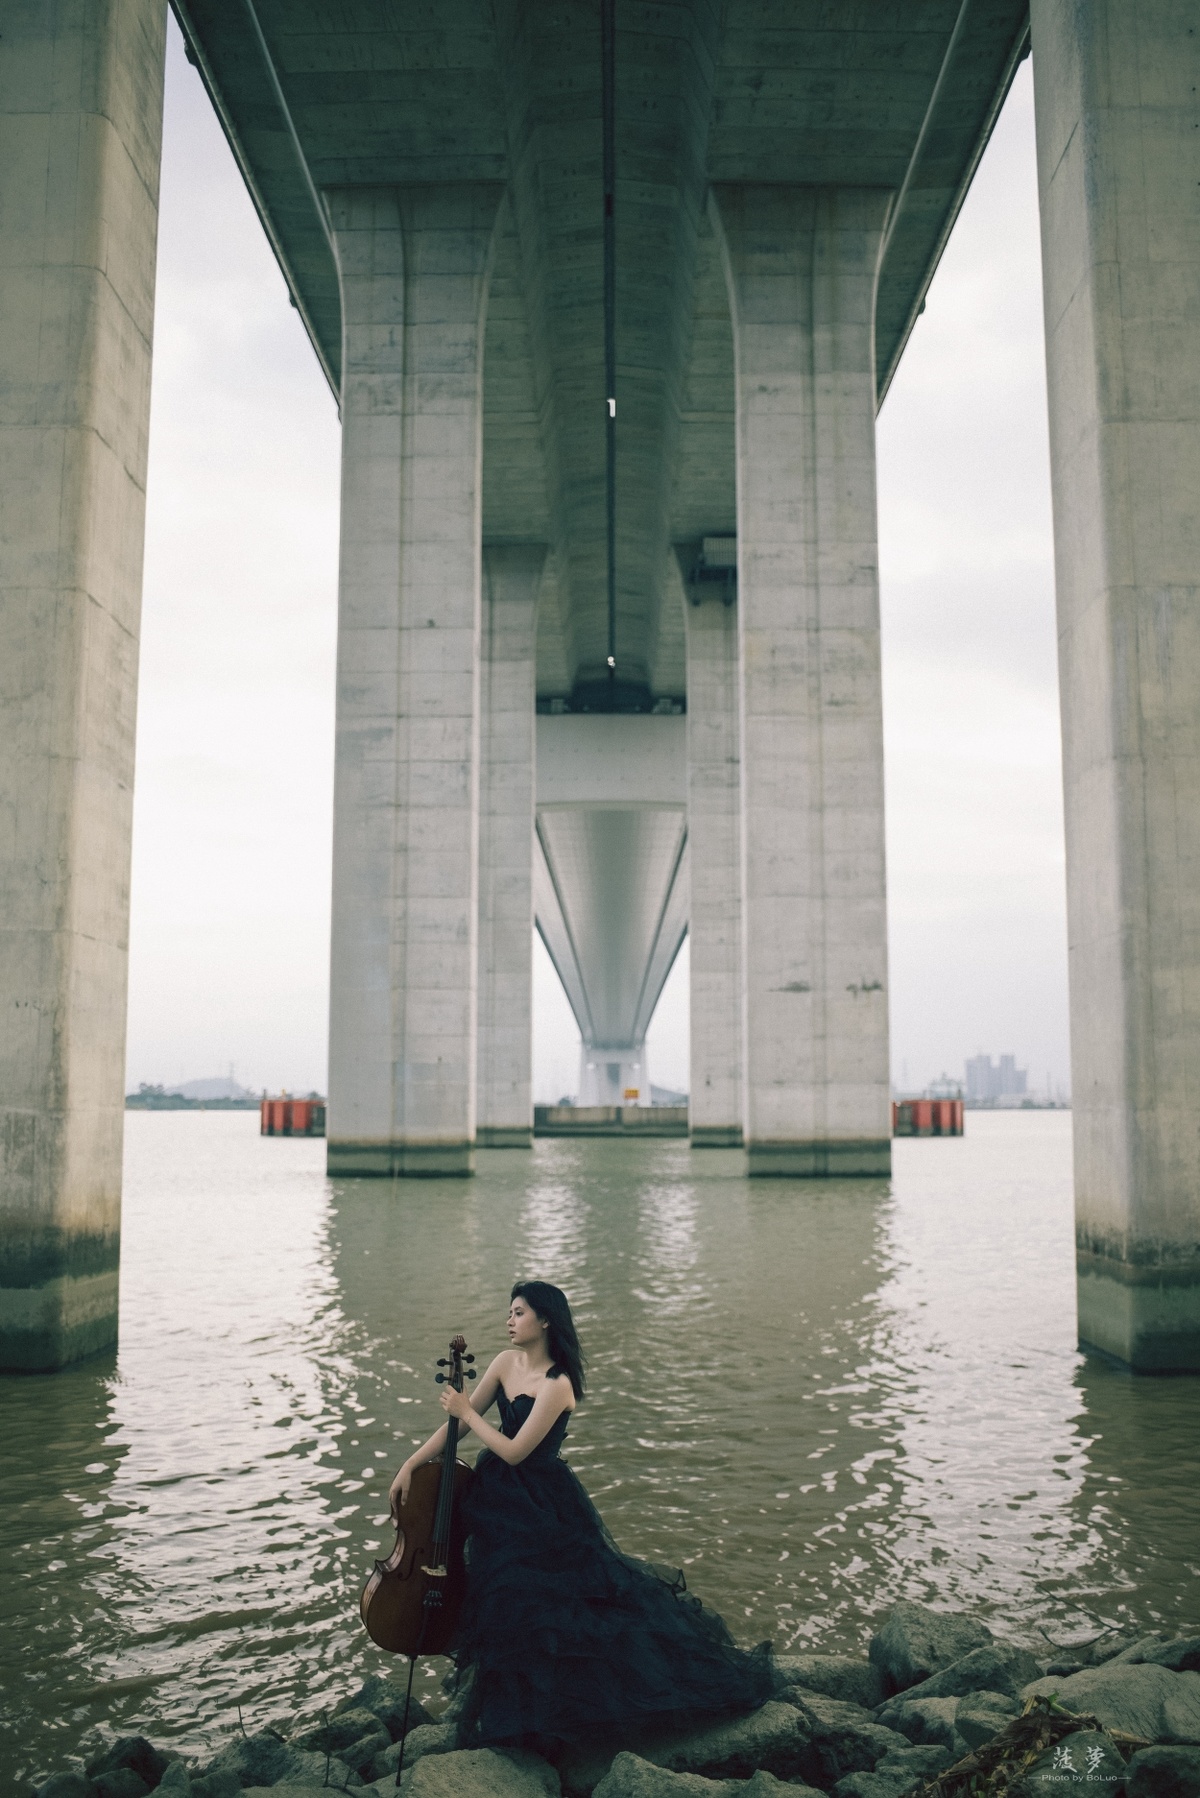 一个穿着连衣裙的女子坐在桥下方的岩石上弹奏小提琴